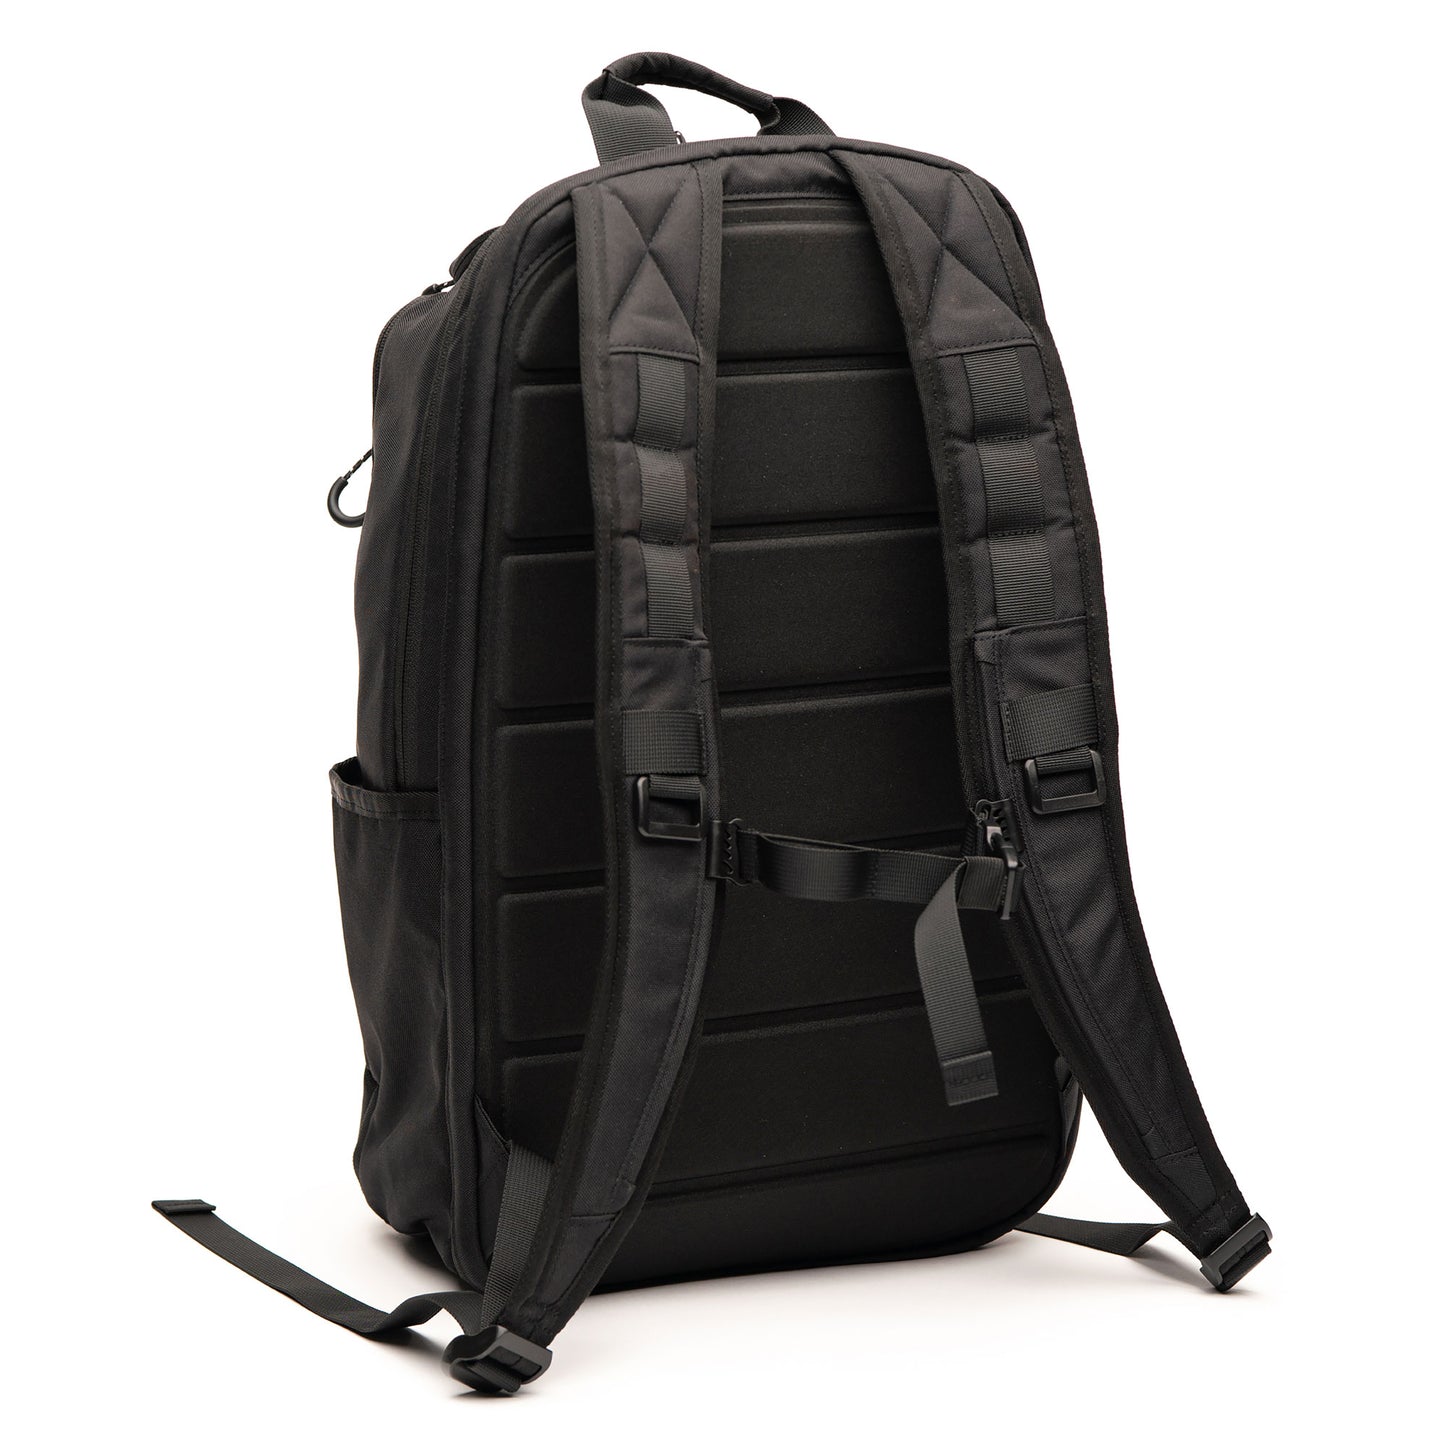 EDC bag backpack | Concealed Carry Backpack